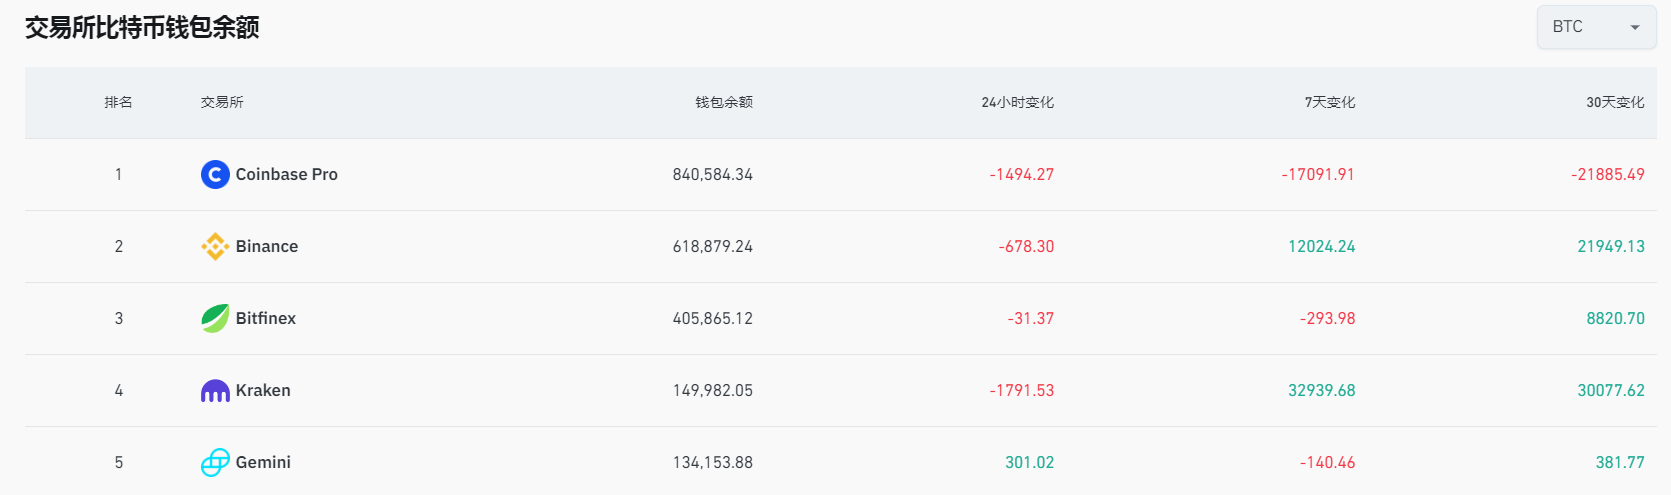 过去7天Kraken流入超3.29万枚BTC，Coinbase Pro流出约1.7万枚BTC